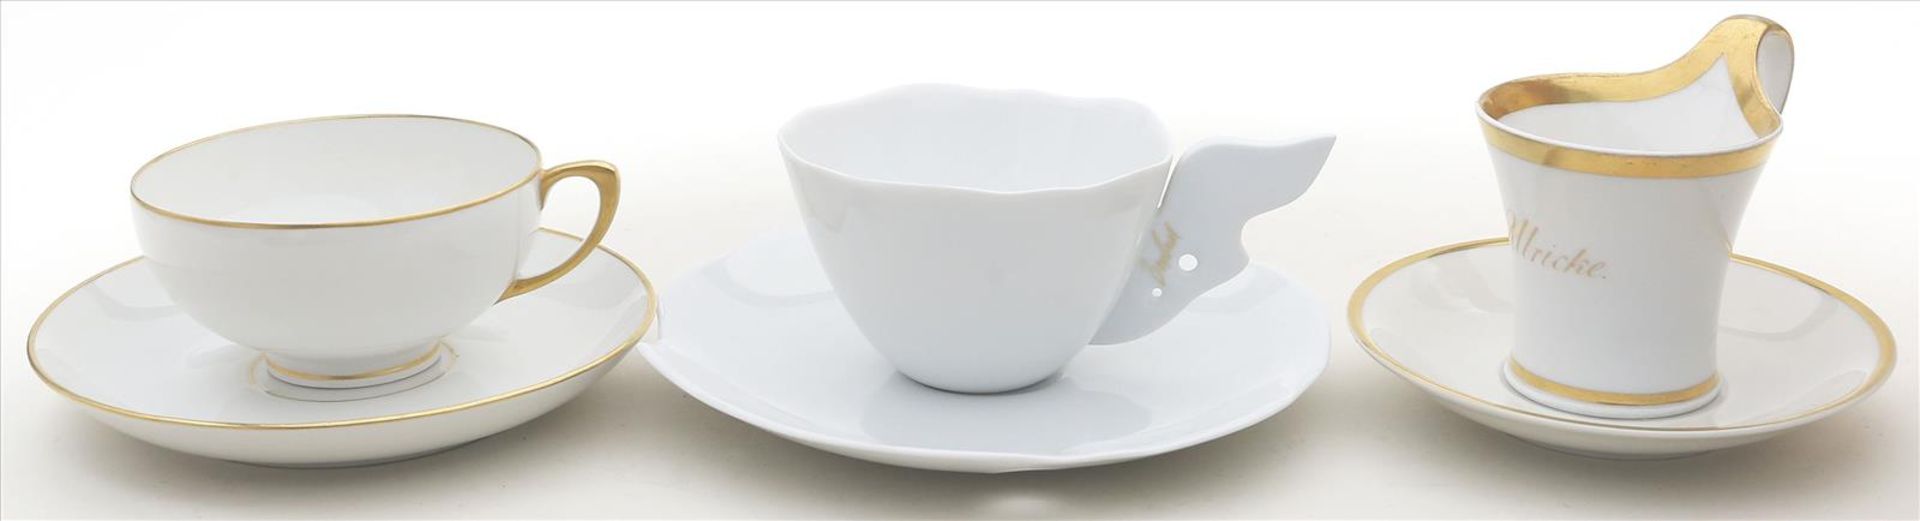 3 Kaffeetassen mit Untertassen.Div. Formen und Dekore. Porzellan, weiß, teils Goldränder (1x